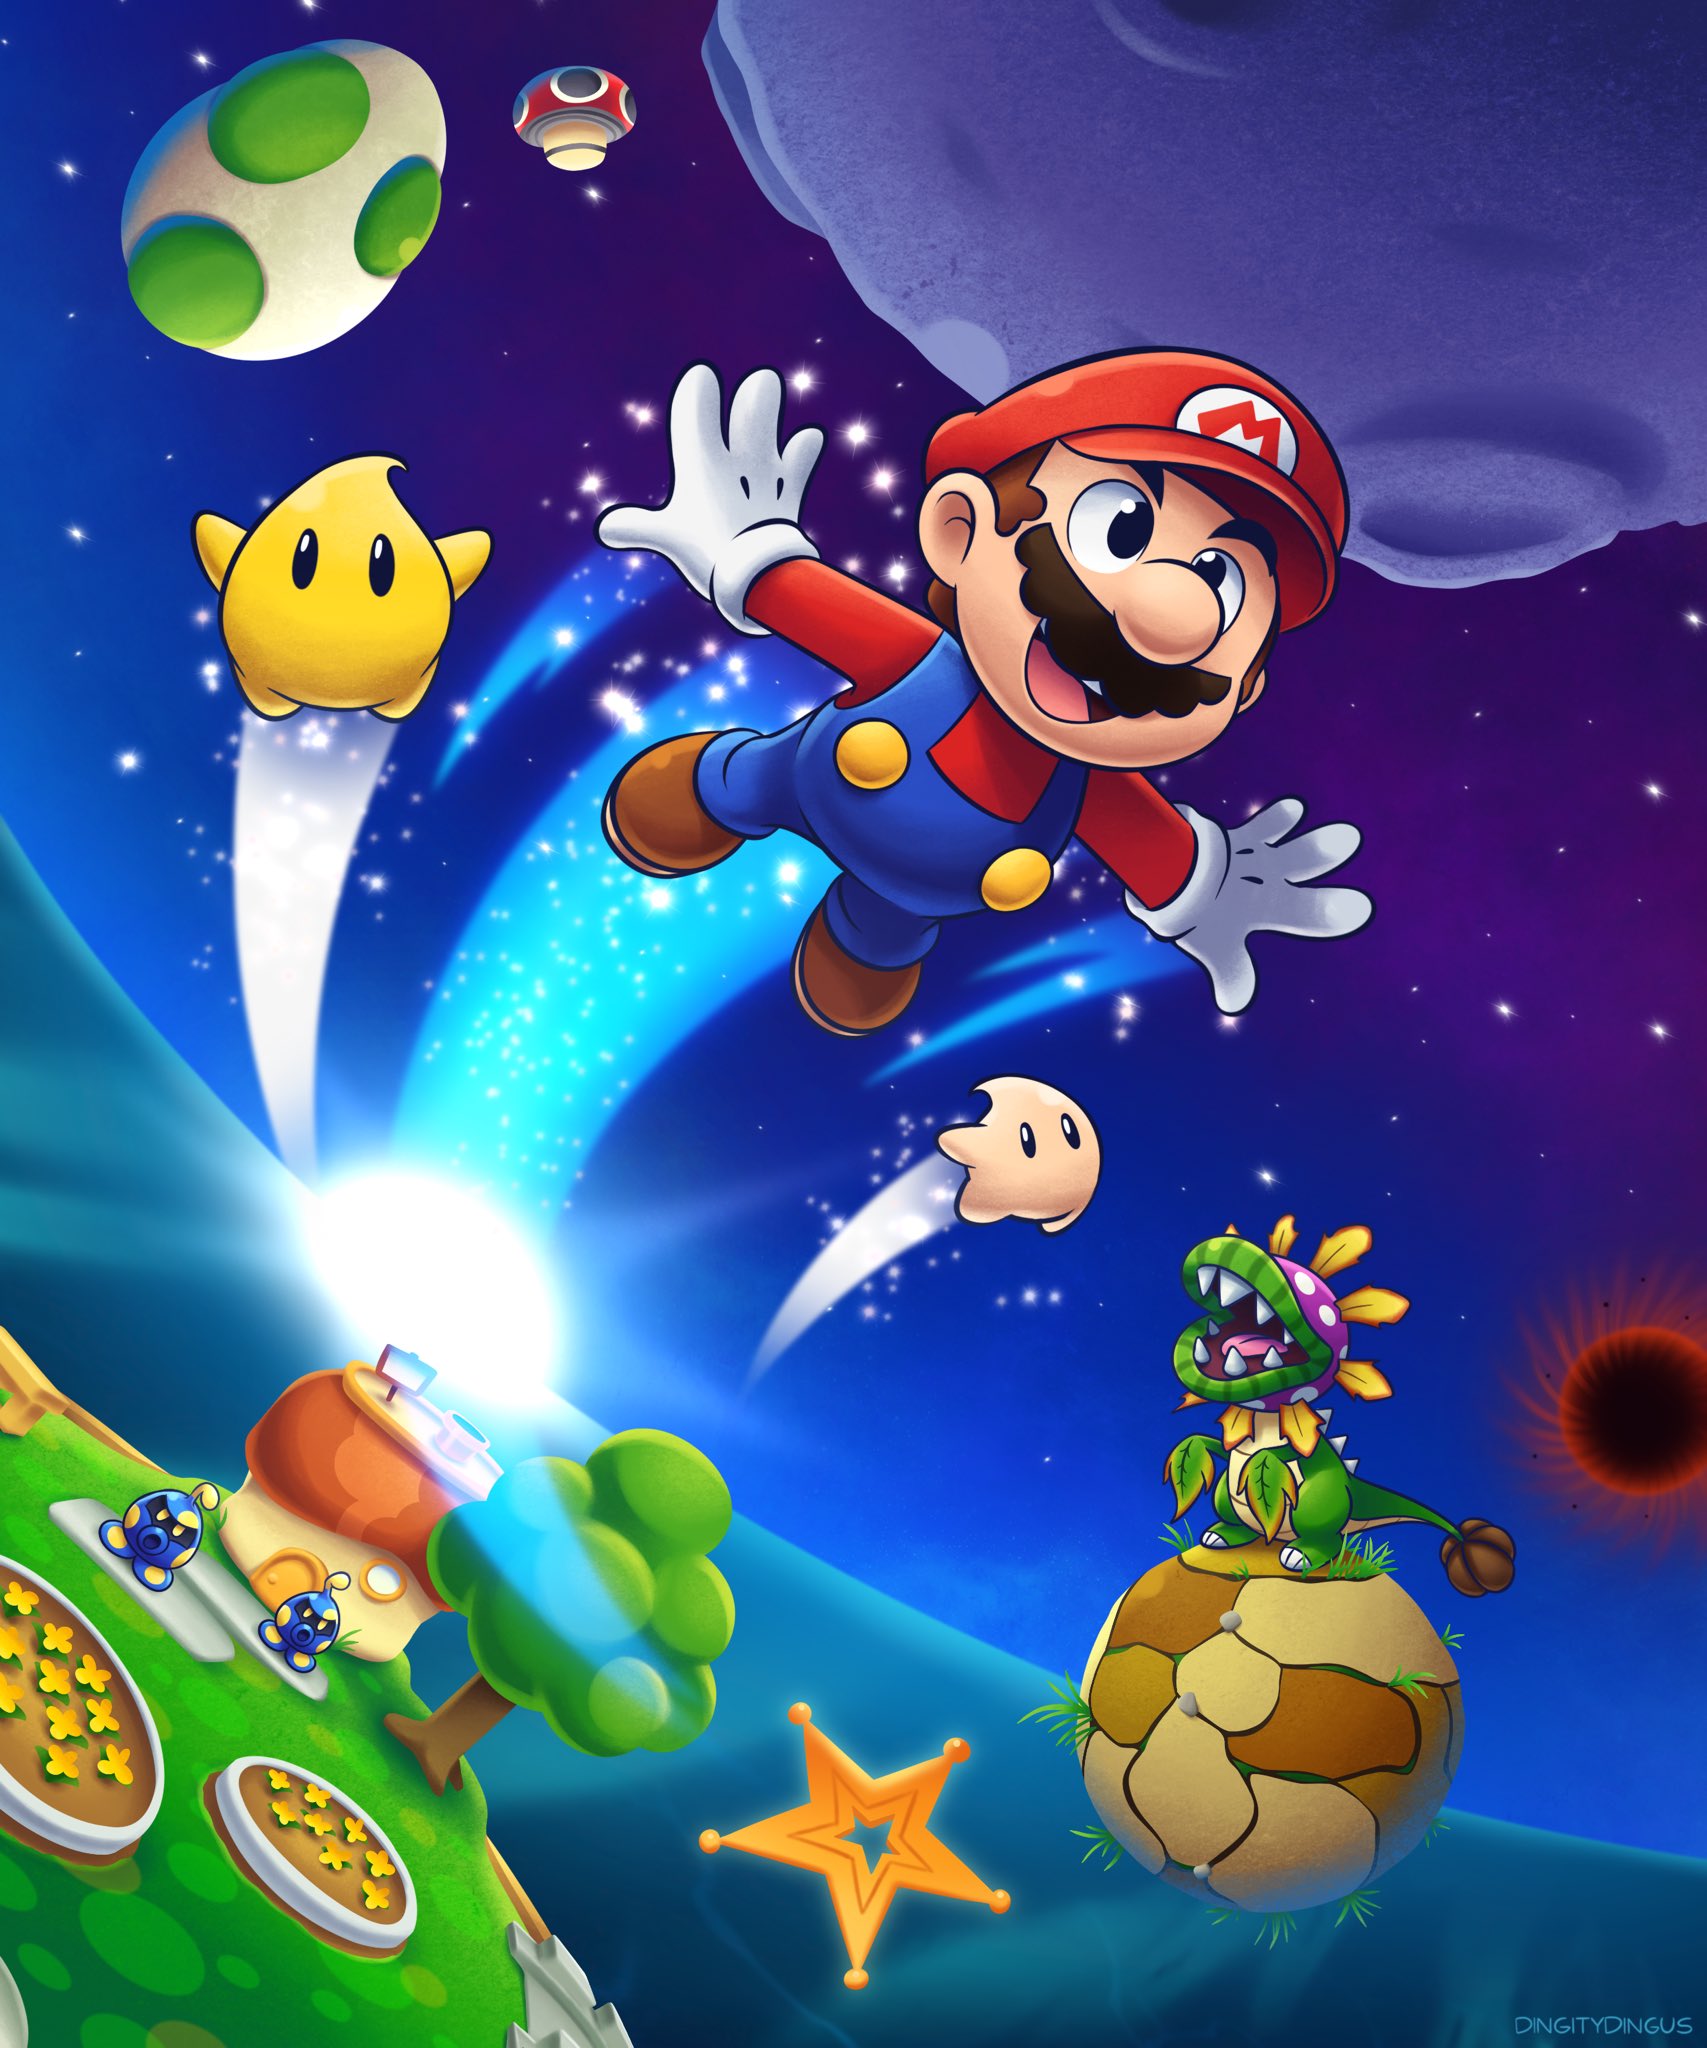 Siêu sao Mario Galaxy trên Twitter luôn được cập nhật những hình ảnh mới nhất về game và nhân vật. Từ những trải nghiệm chơi game thú vị đến các tình huống hài hước đầy nhân vật trông đáng yêu, bạn sẽ có một trang Twitter đáng để theo dõi cho những ai yêu thích game Mario.